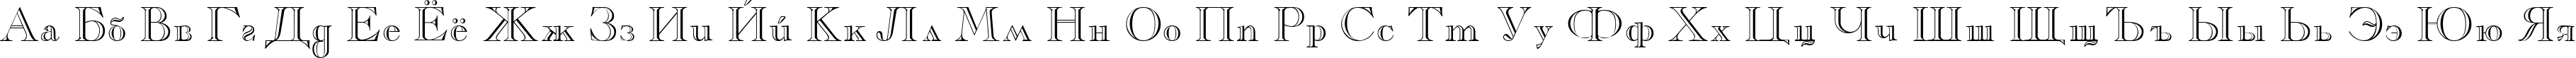 Пример написания русского алфавита шрифтом Casper